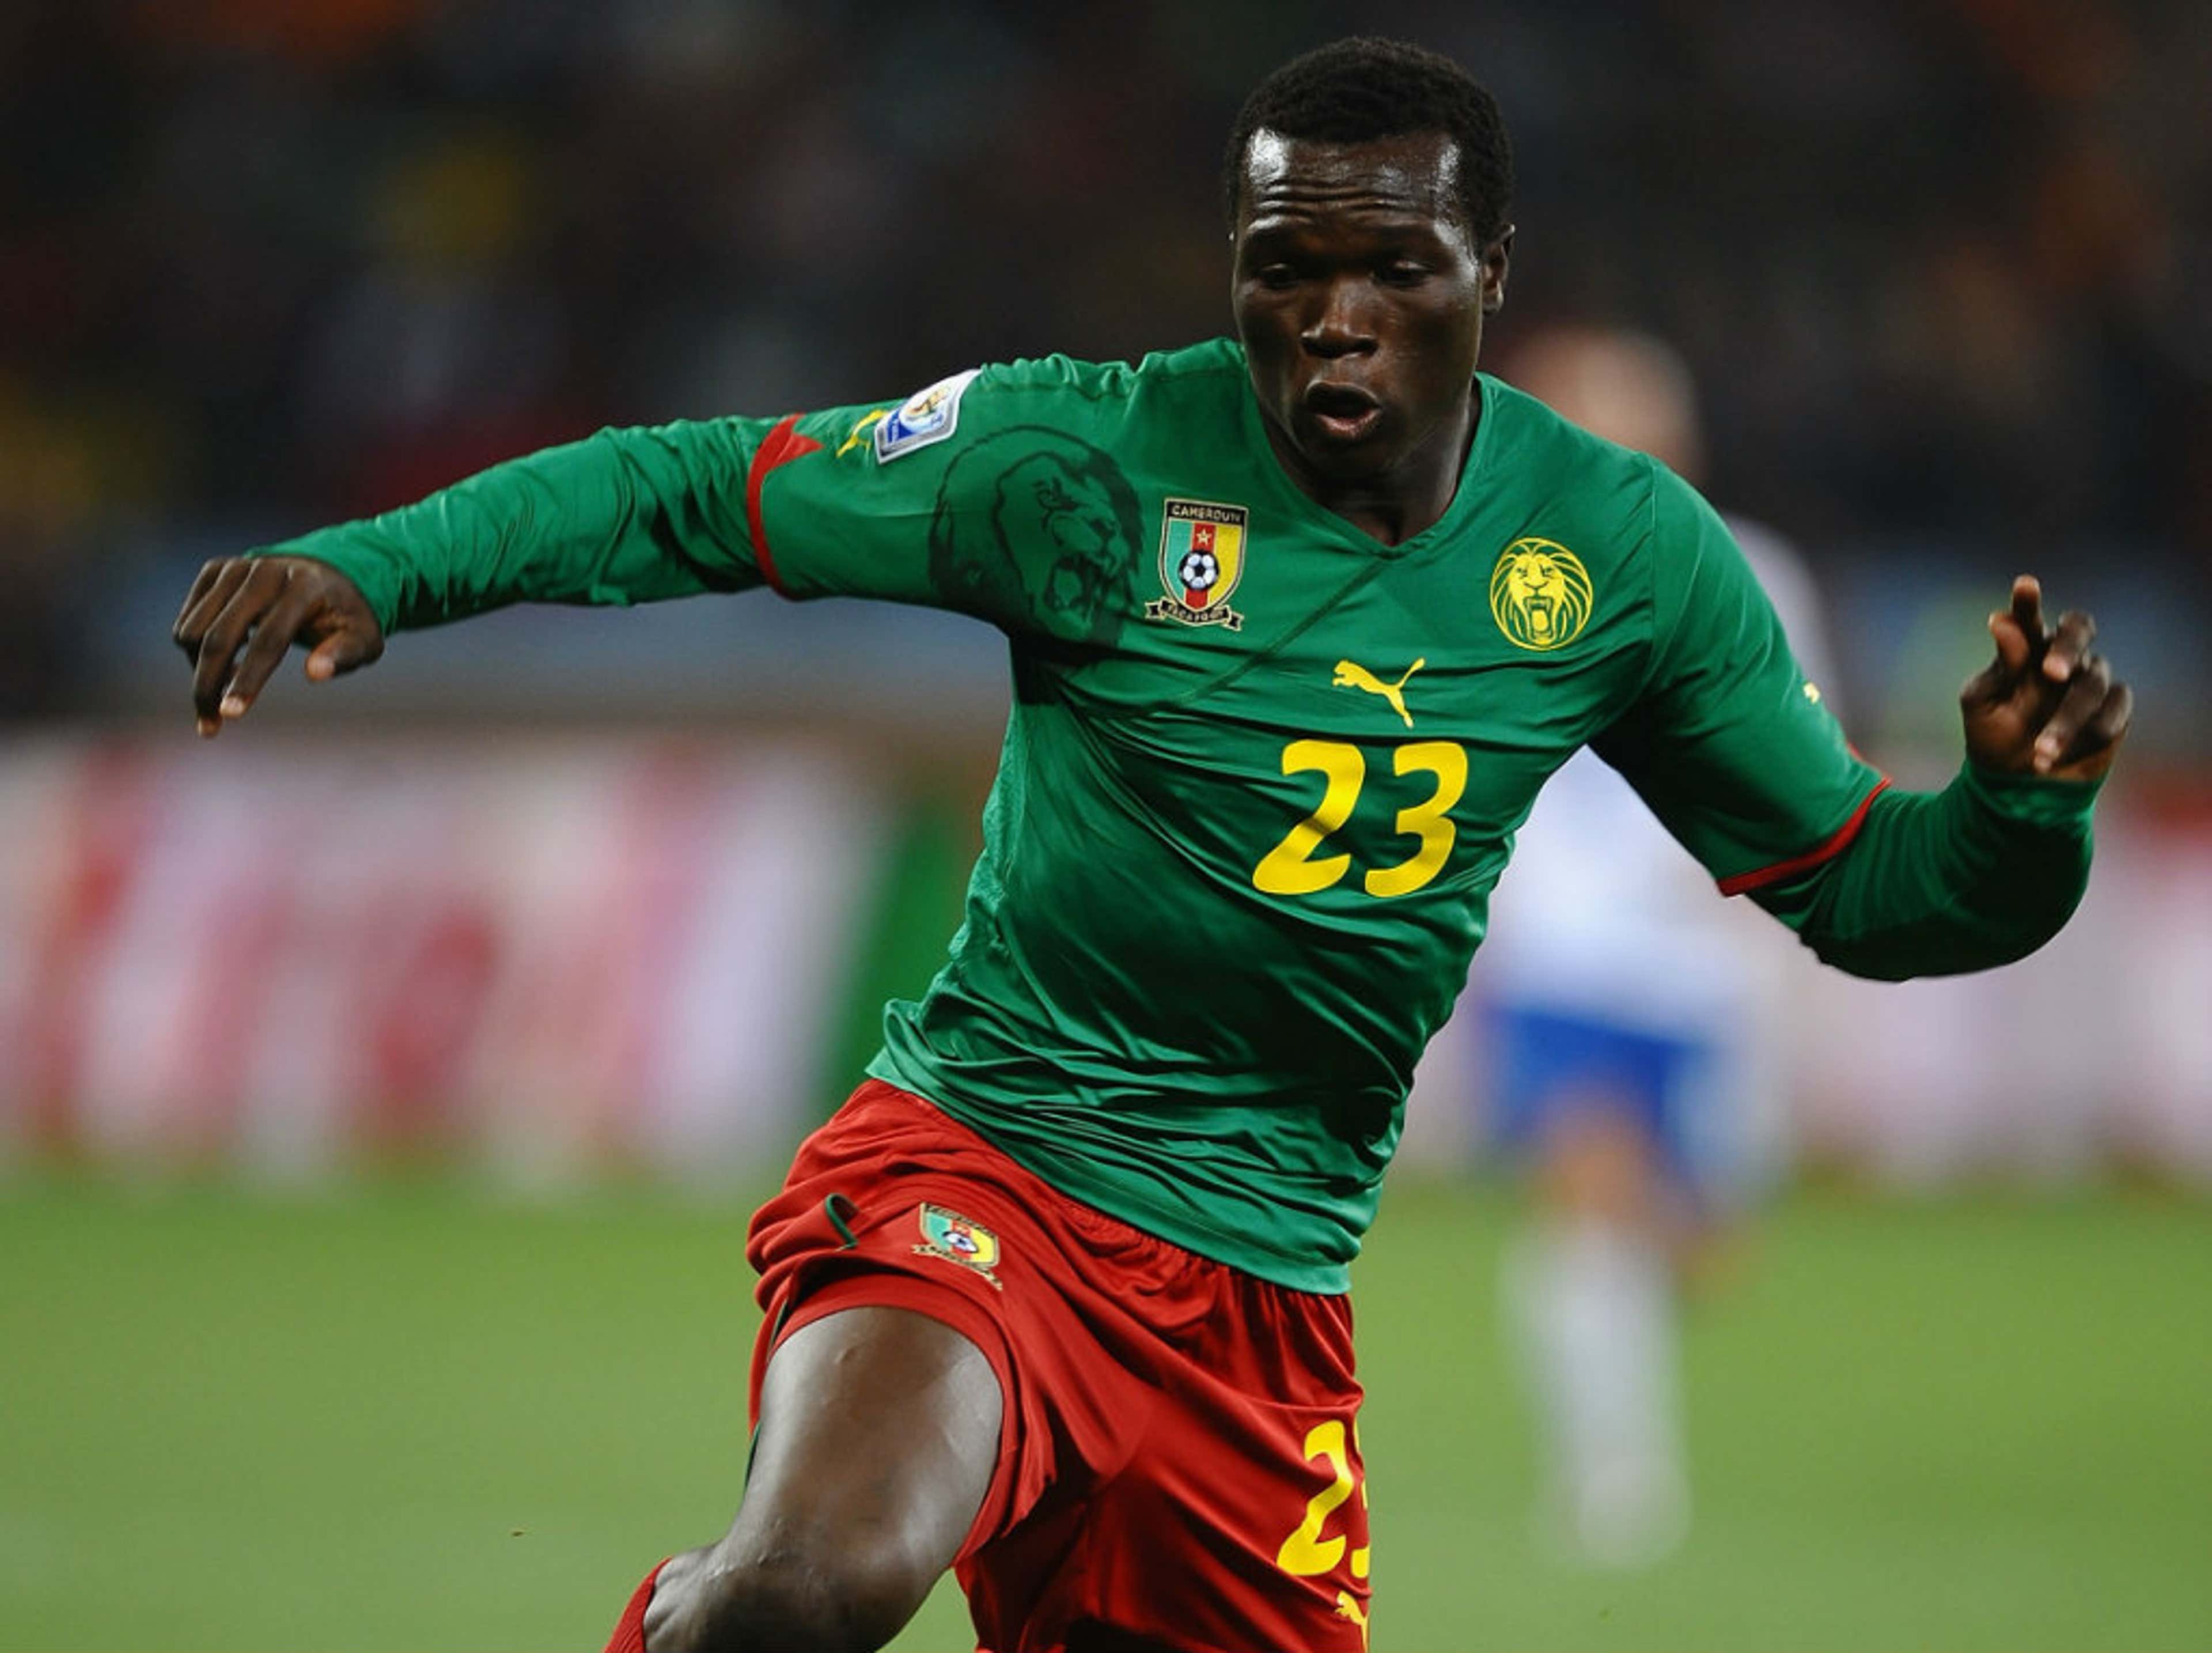 Vincent Aboubakar Cameroon Netherlands World Cup 2010 06242010